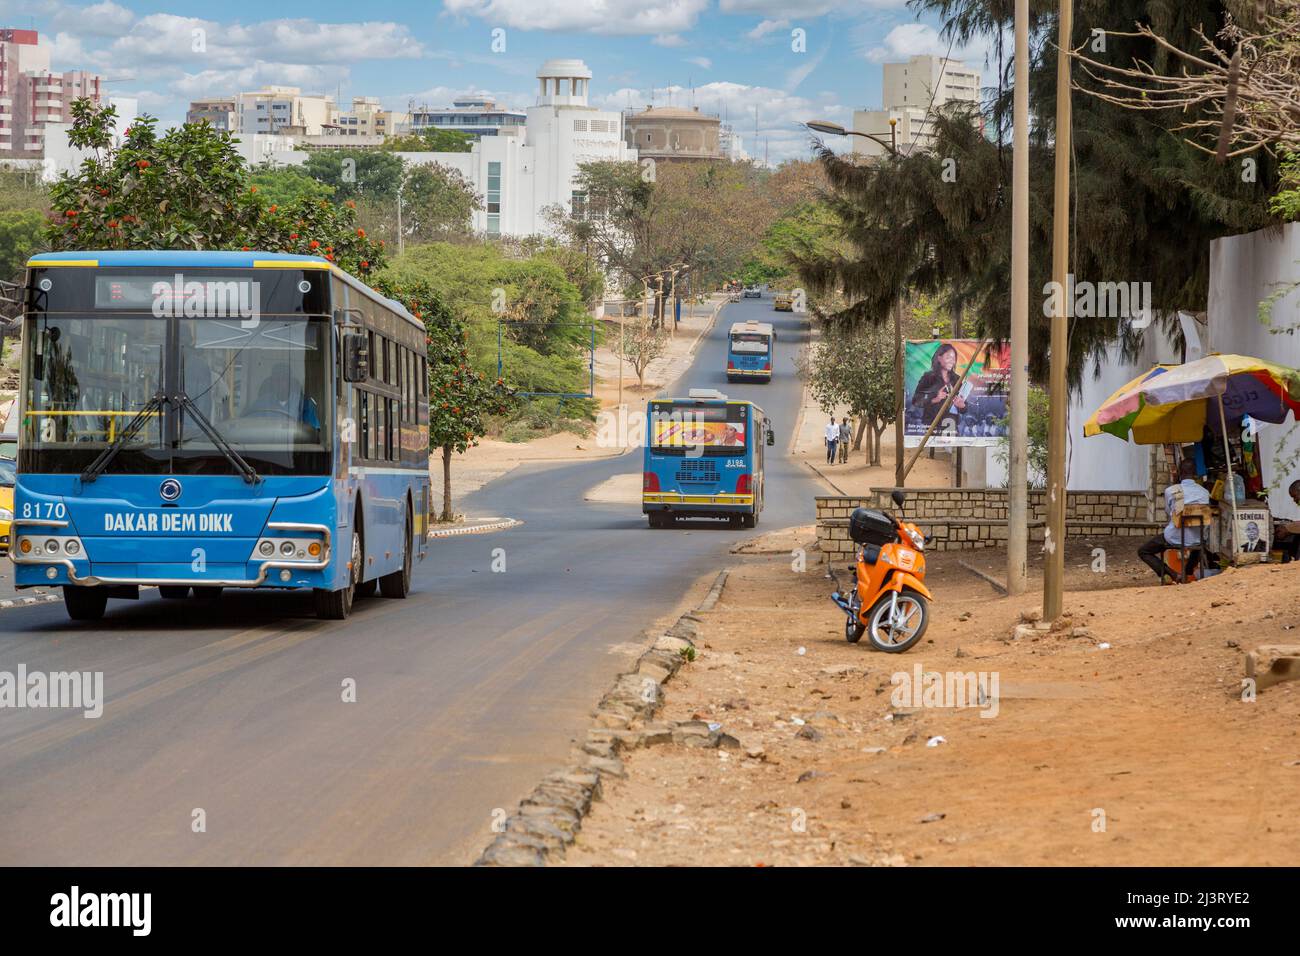 Dakar, Sénégal. Transports publics, autobus municipaux. Banque D'Images